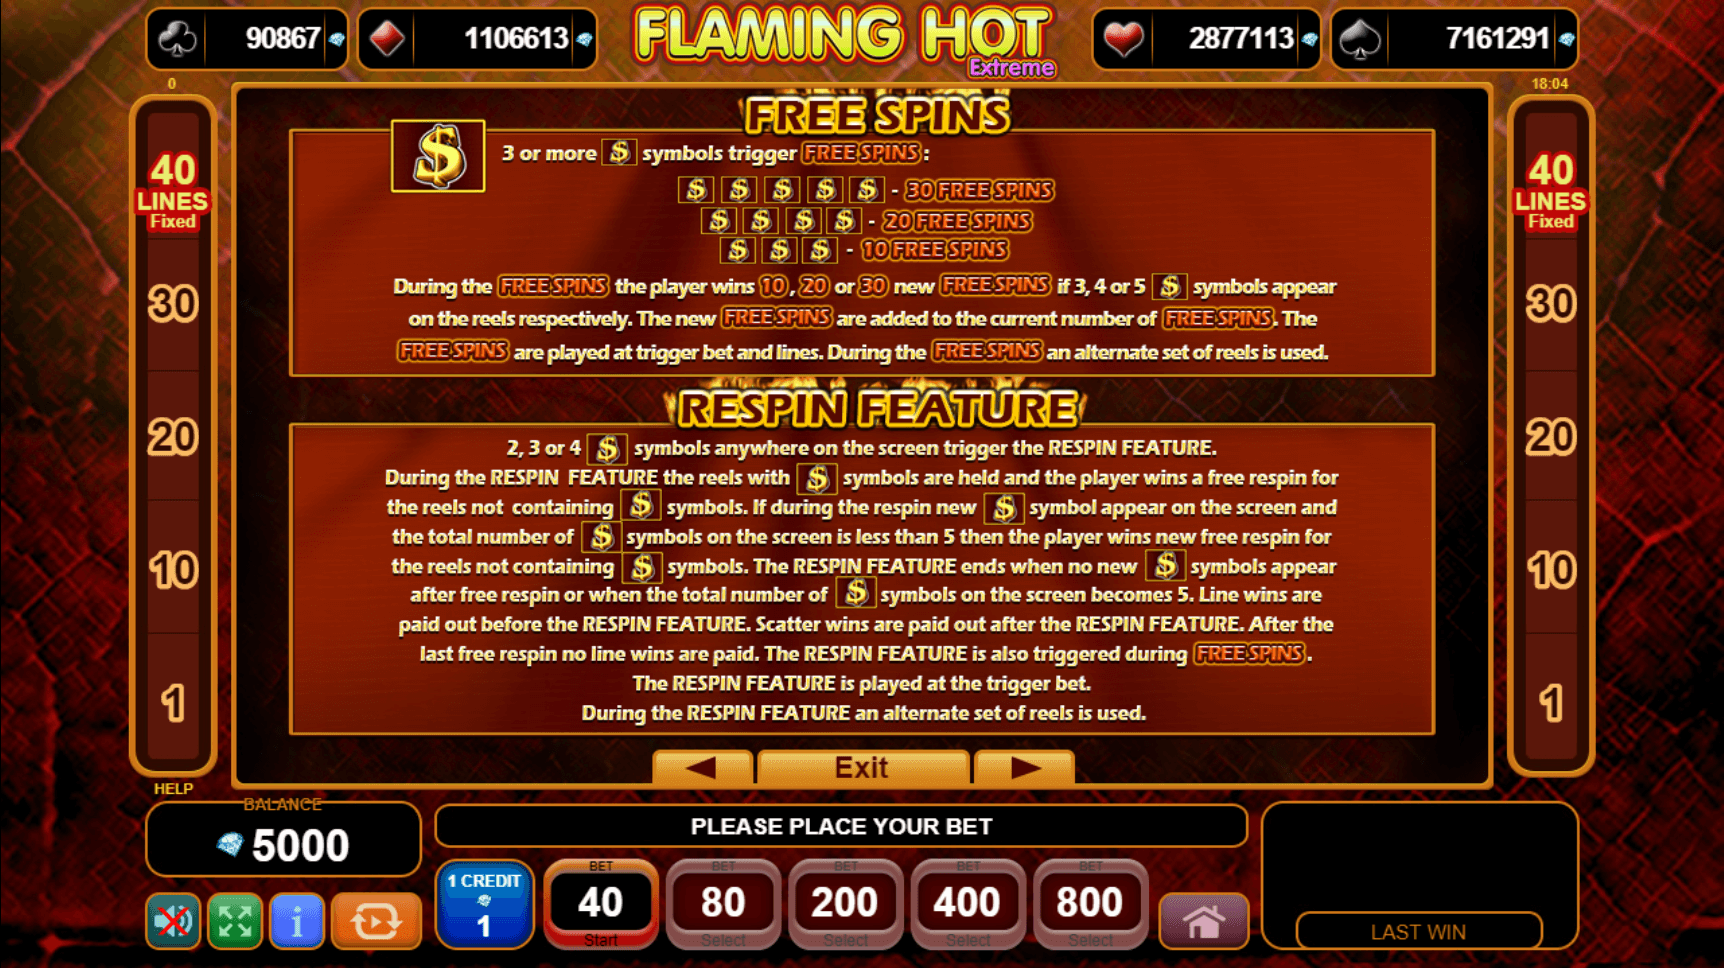 Flaming Hot Extreme Slot Machine